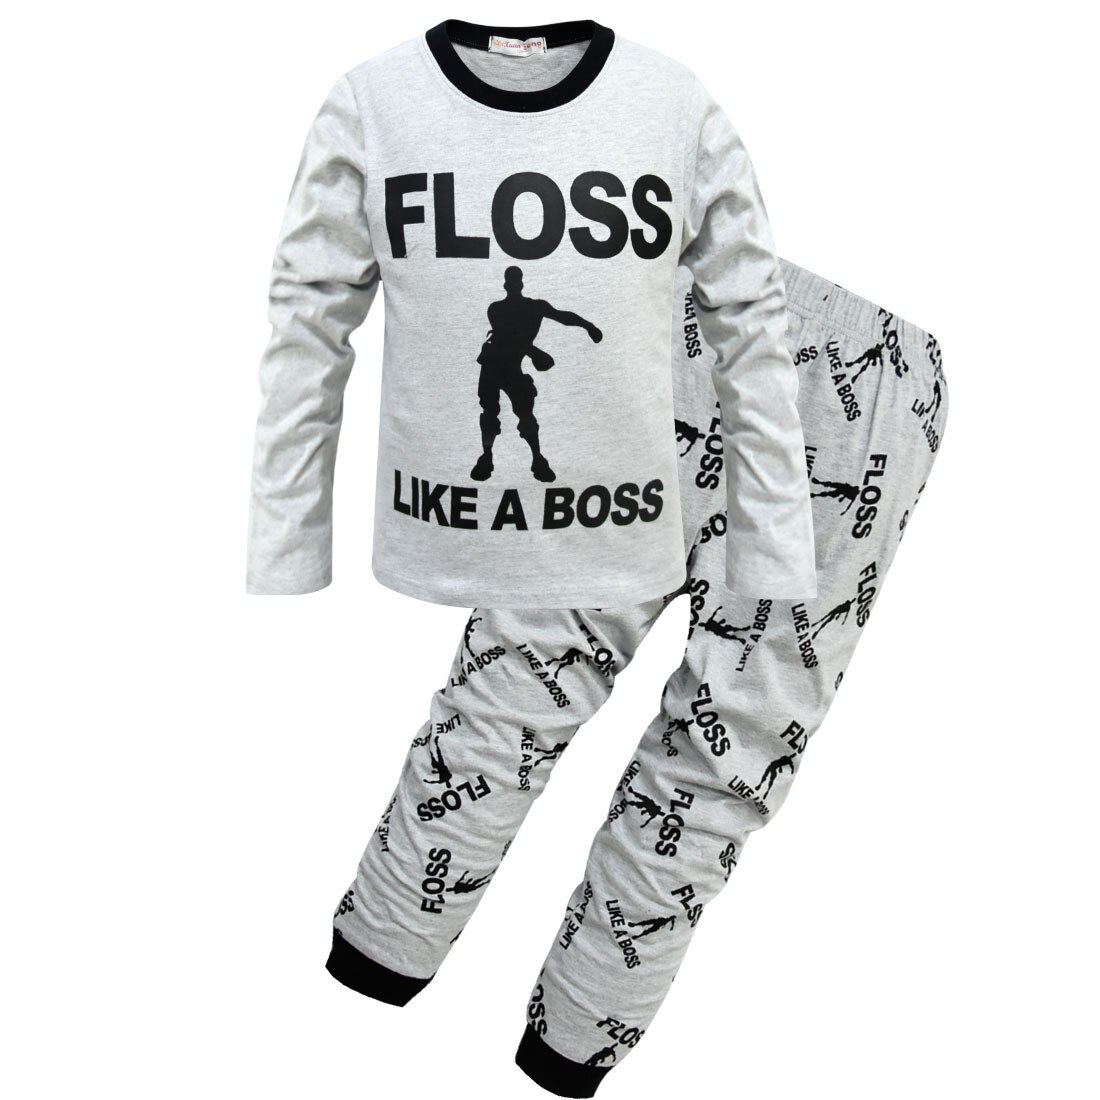 Pijama blanco con inscripción "Floss like a boss" gris de muy alta calidad